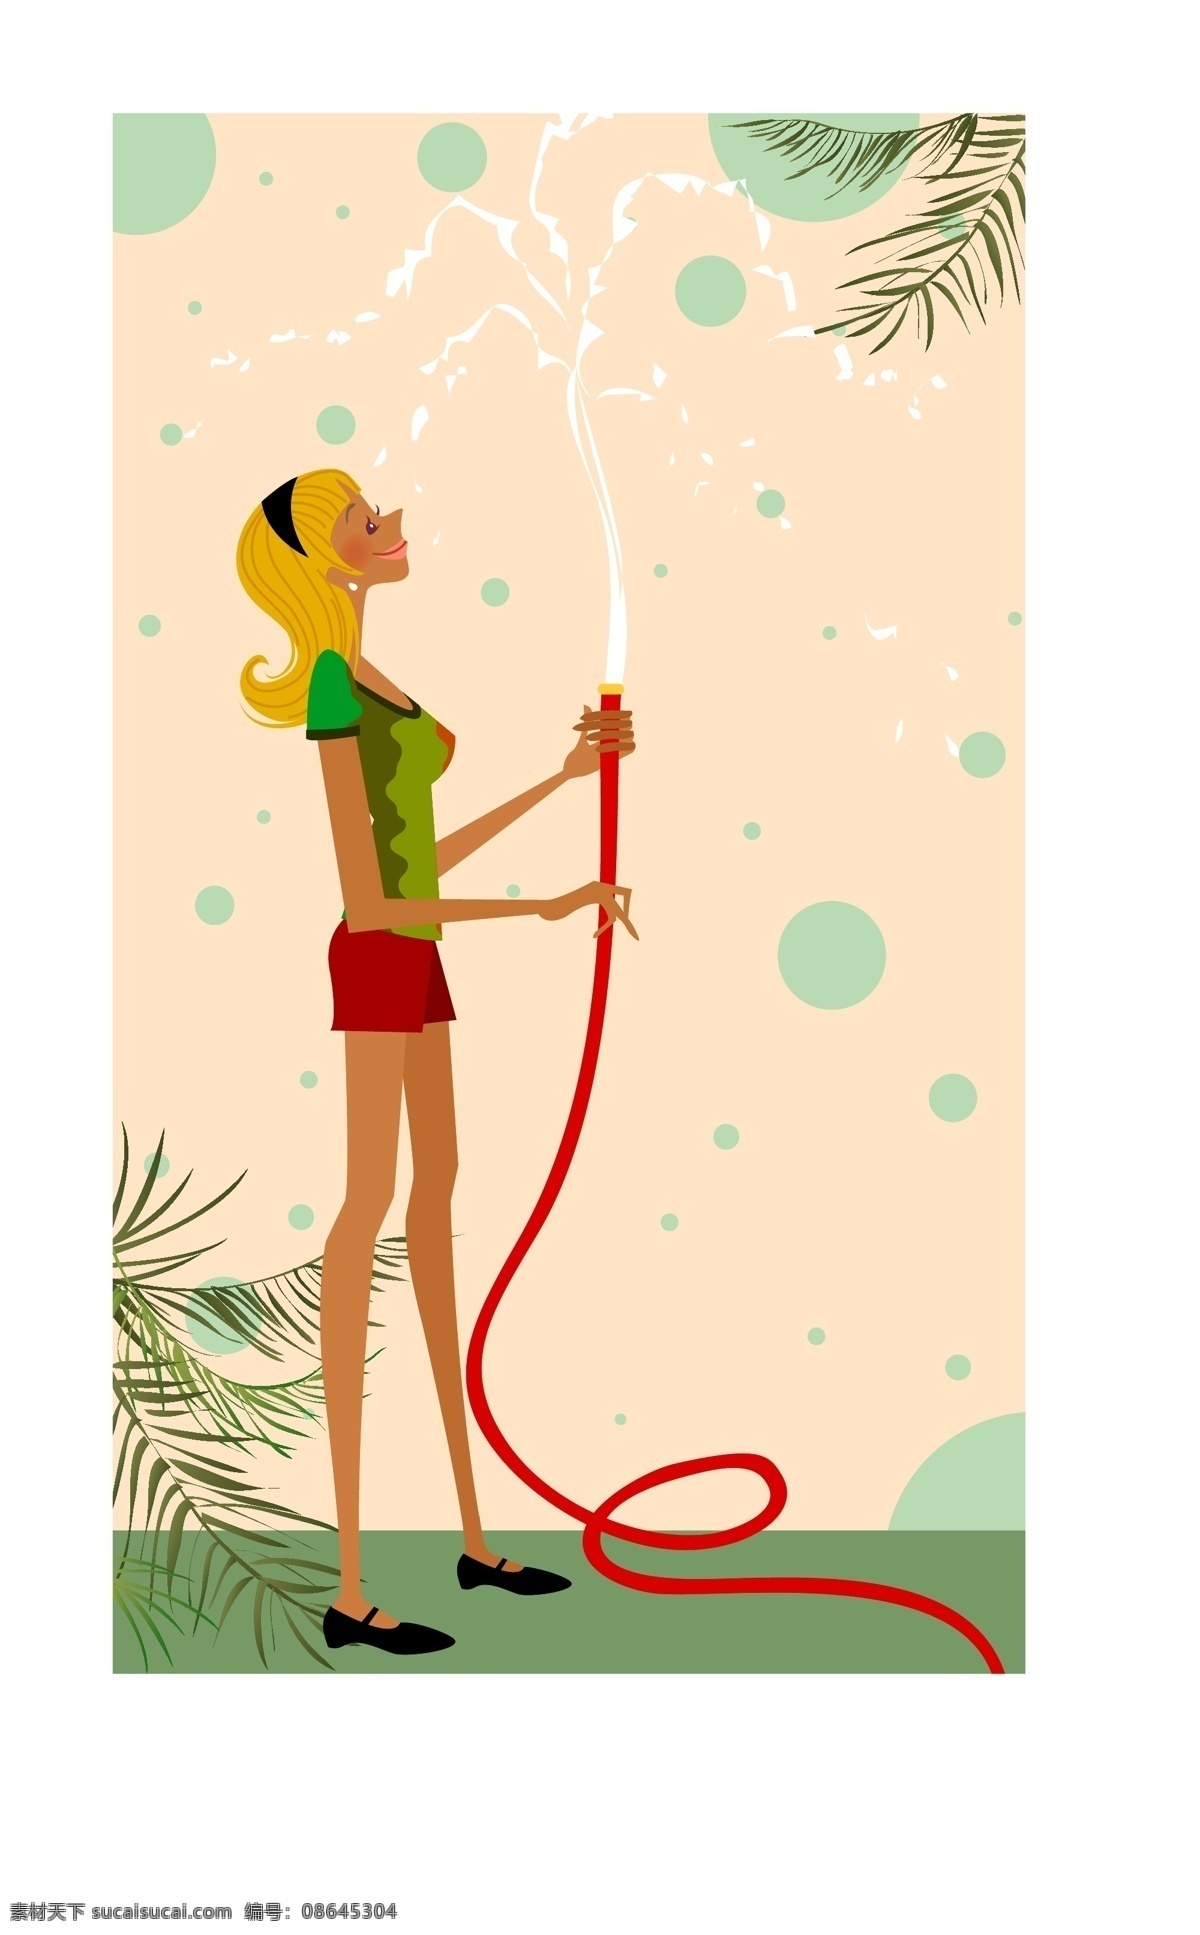 我爱 劳动 矢量图 草地 女孩 喷水 树叶 水管 植物